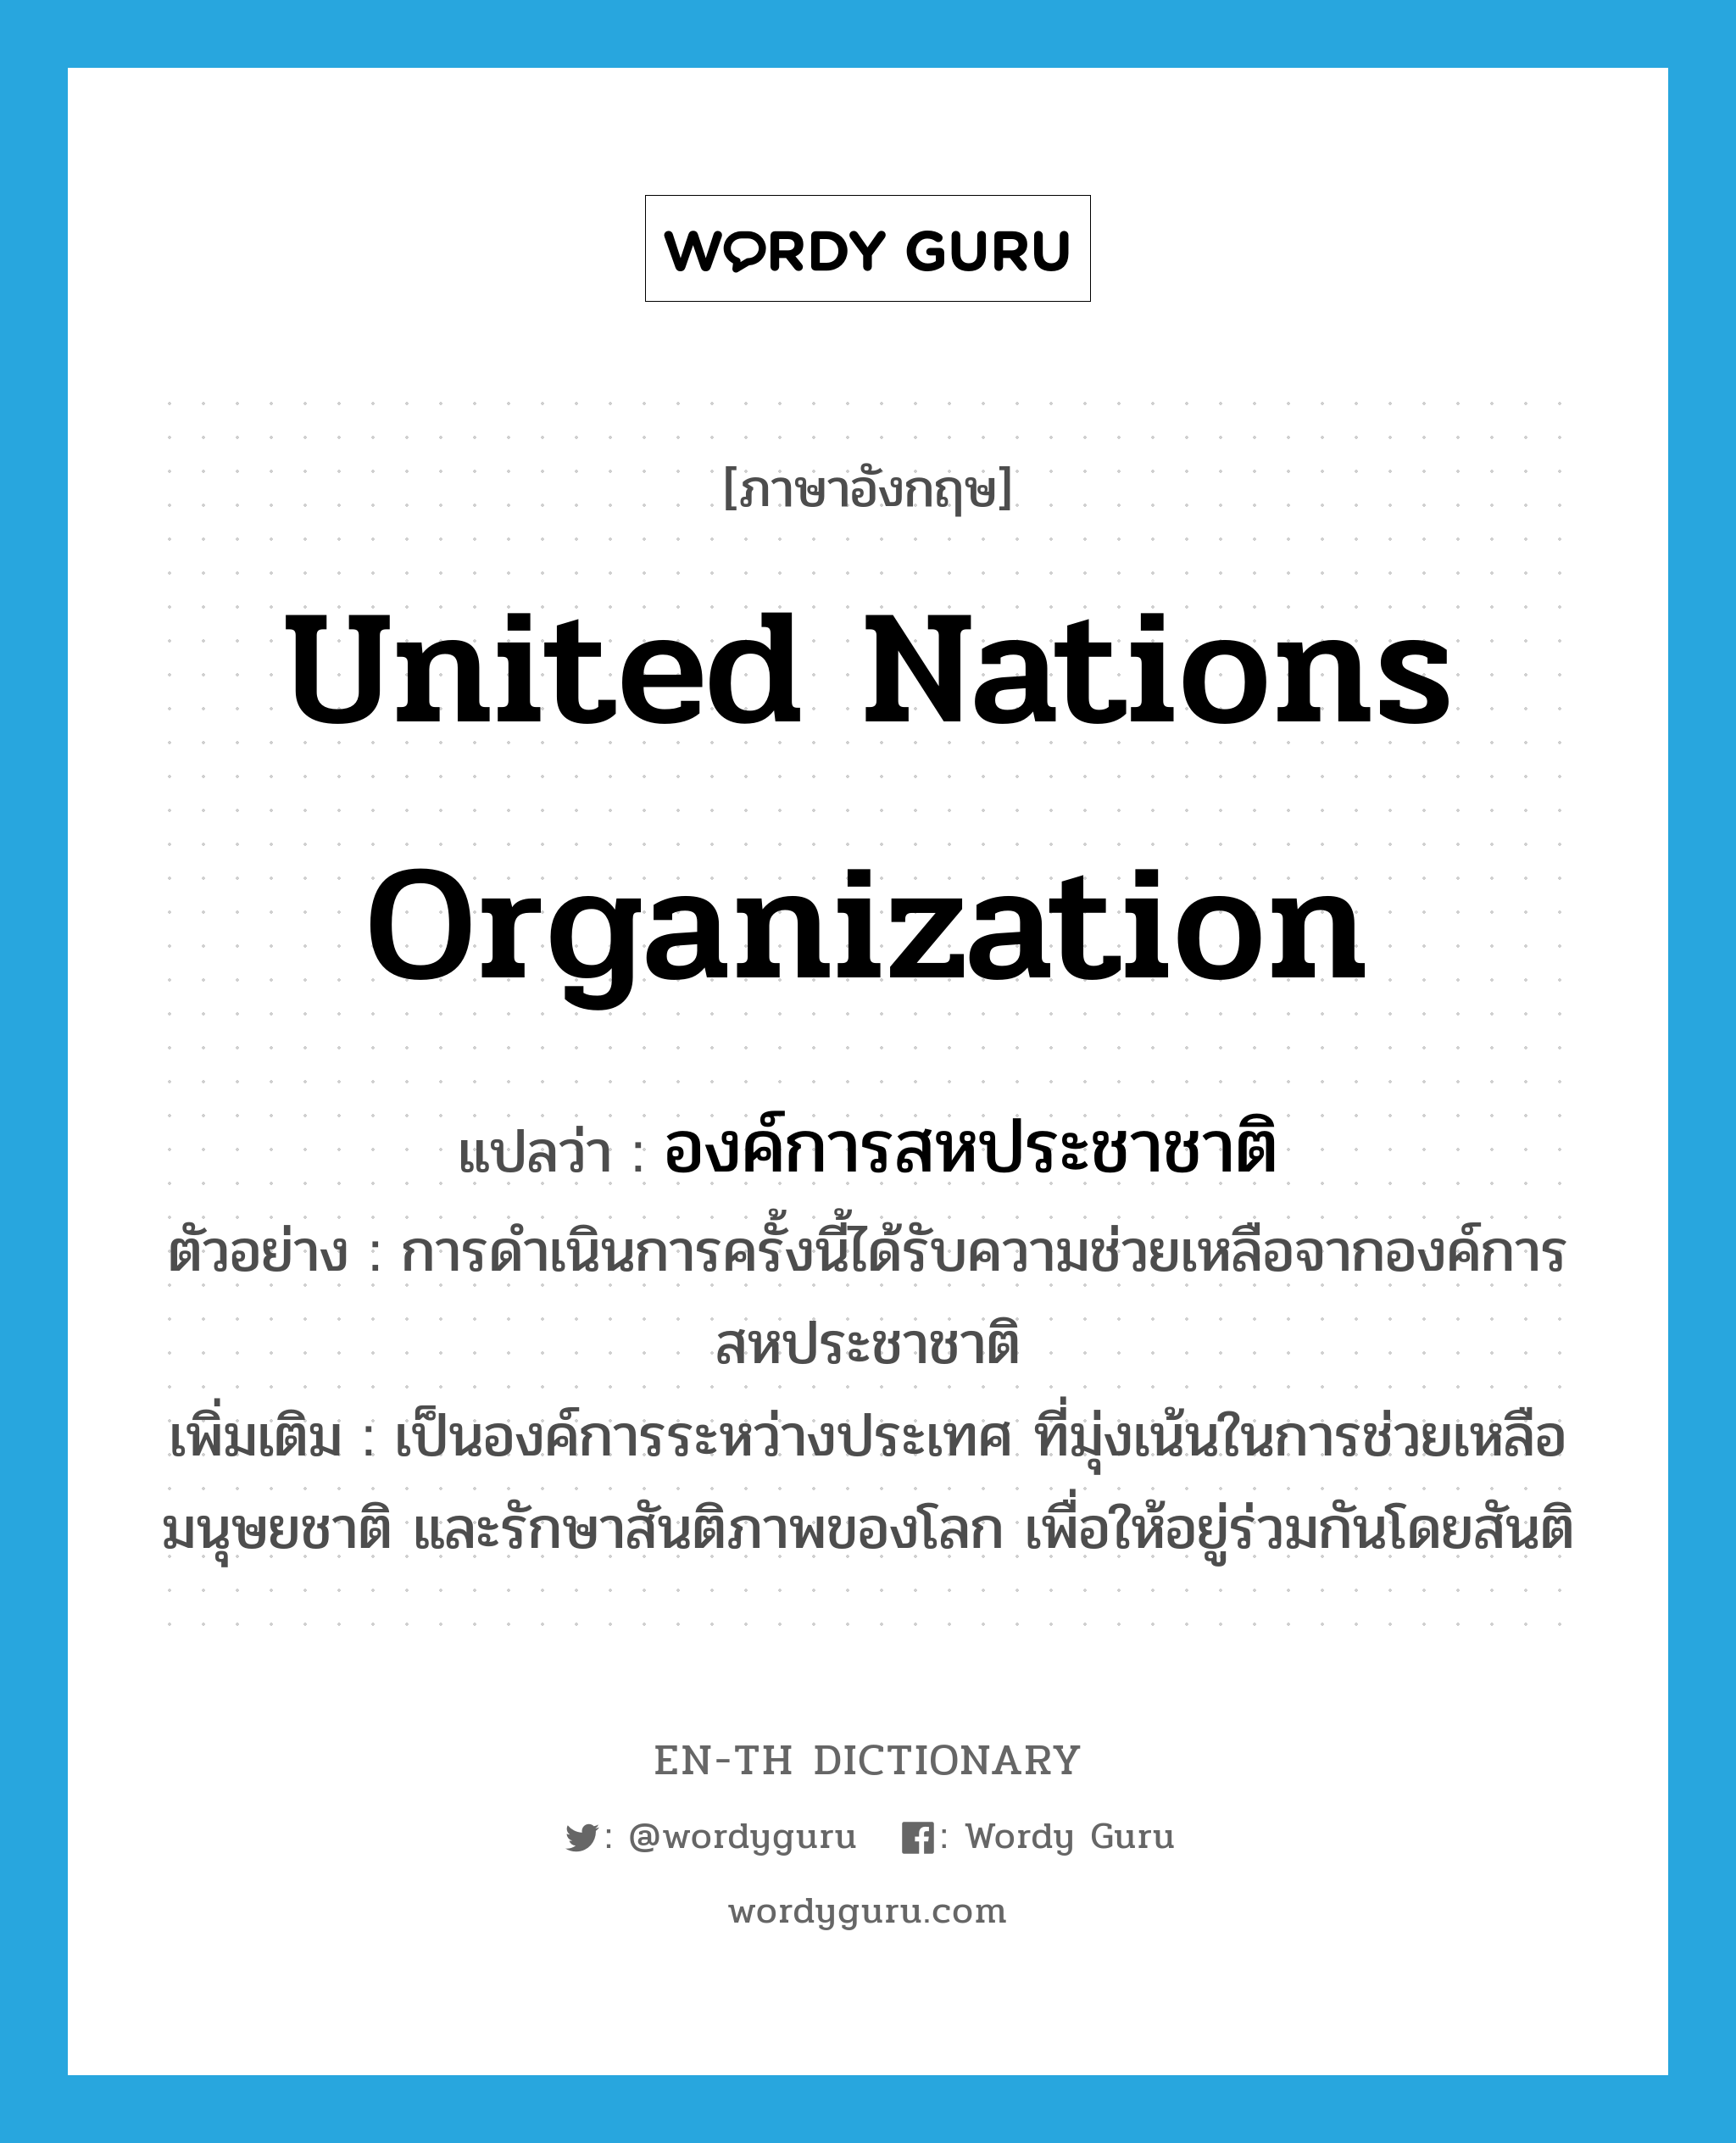 องค์การสหประชาชาติ ภาษาอังกฤษ?, คำศัพท์ภาษาอังกฤษ องค์การสหประชาชาติ แปลว่า United Nations Organization ประเภท N ตัวอย่าง การดำเนินการครั้งนี้ได้รับความช่วยเหลือจากองค์การสหประชาชาติ เพิ่มเติม เป็นองค์การระหว่างประเทศ ที่มุ่งเน้นในการช่วยเหลือ มนุษยชาติ และรักษาสันติภาพของโลก เพื่อให้อยู่ร่วมกันโดยสันติ หมวด N